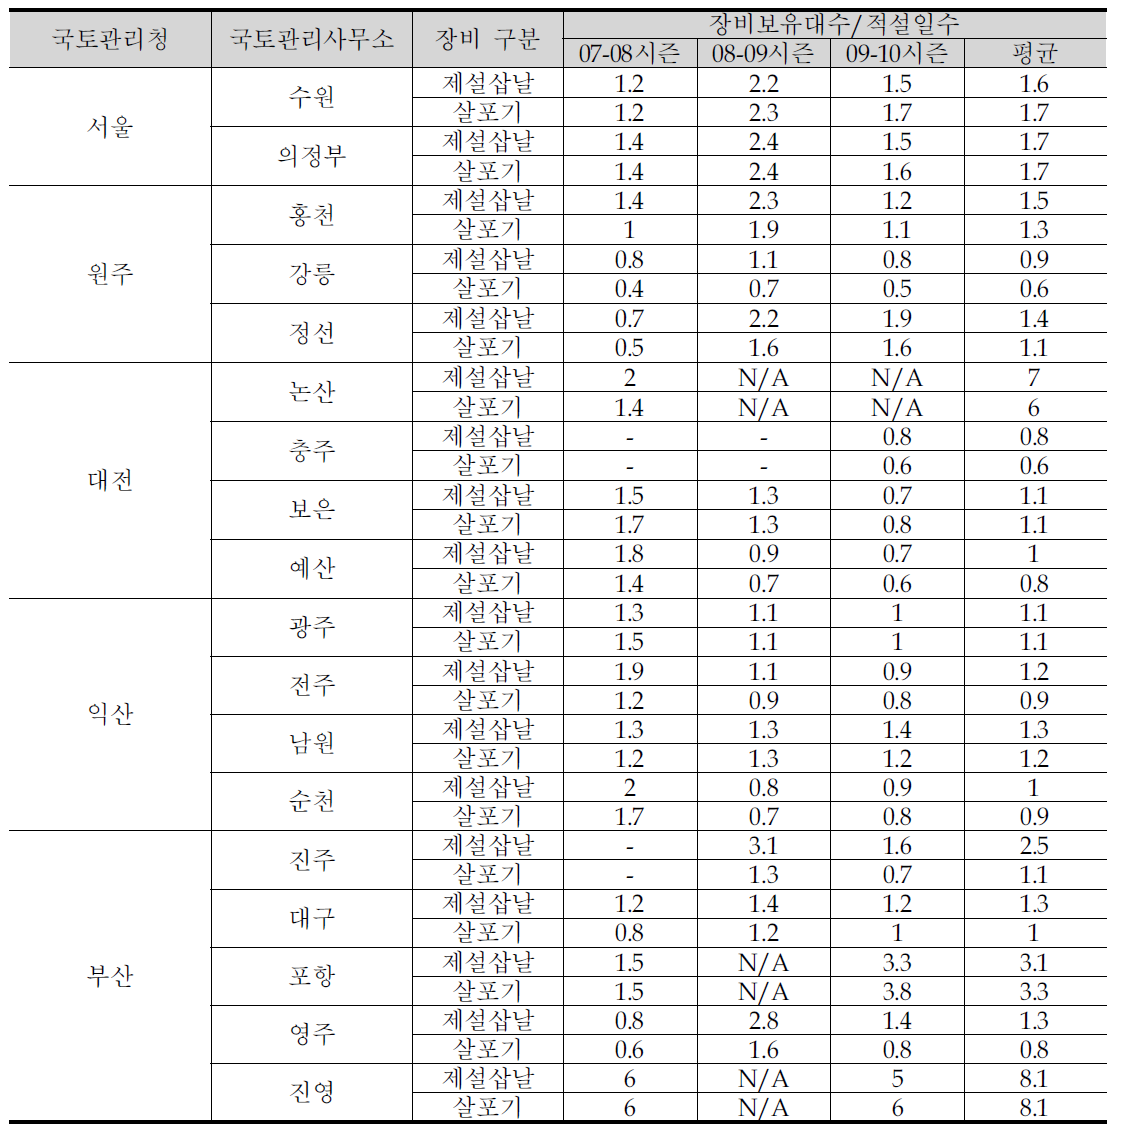 국토관리사무소의 시즌별 장비보유대수/적설일수 비교